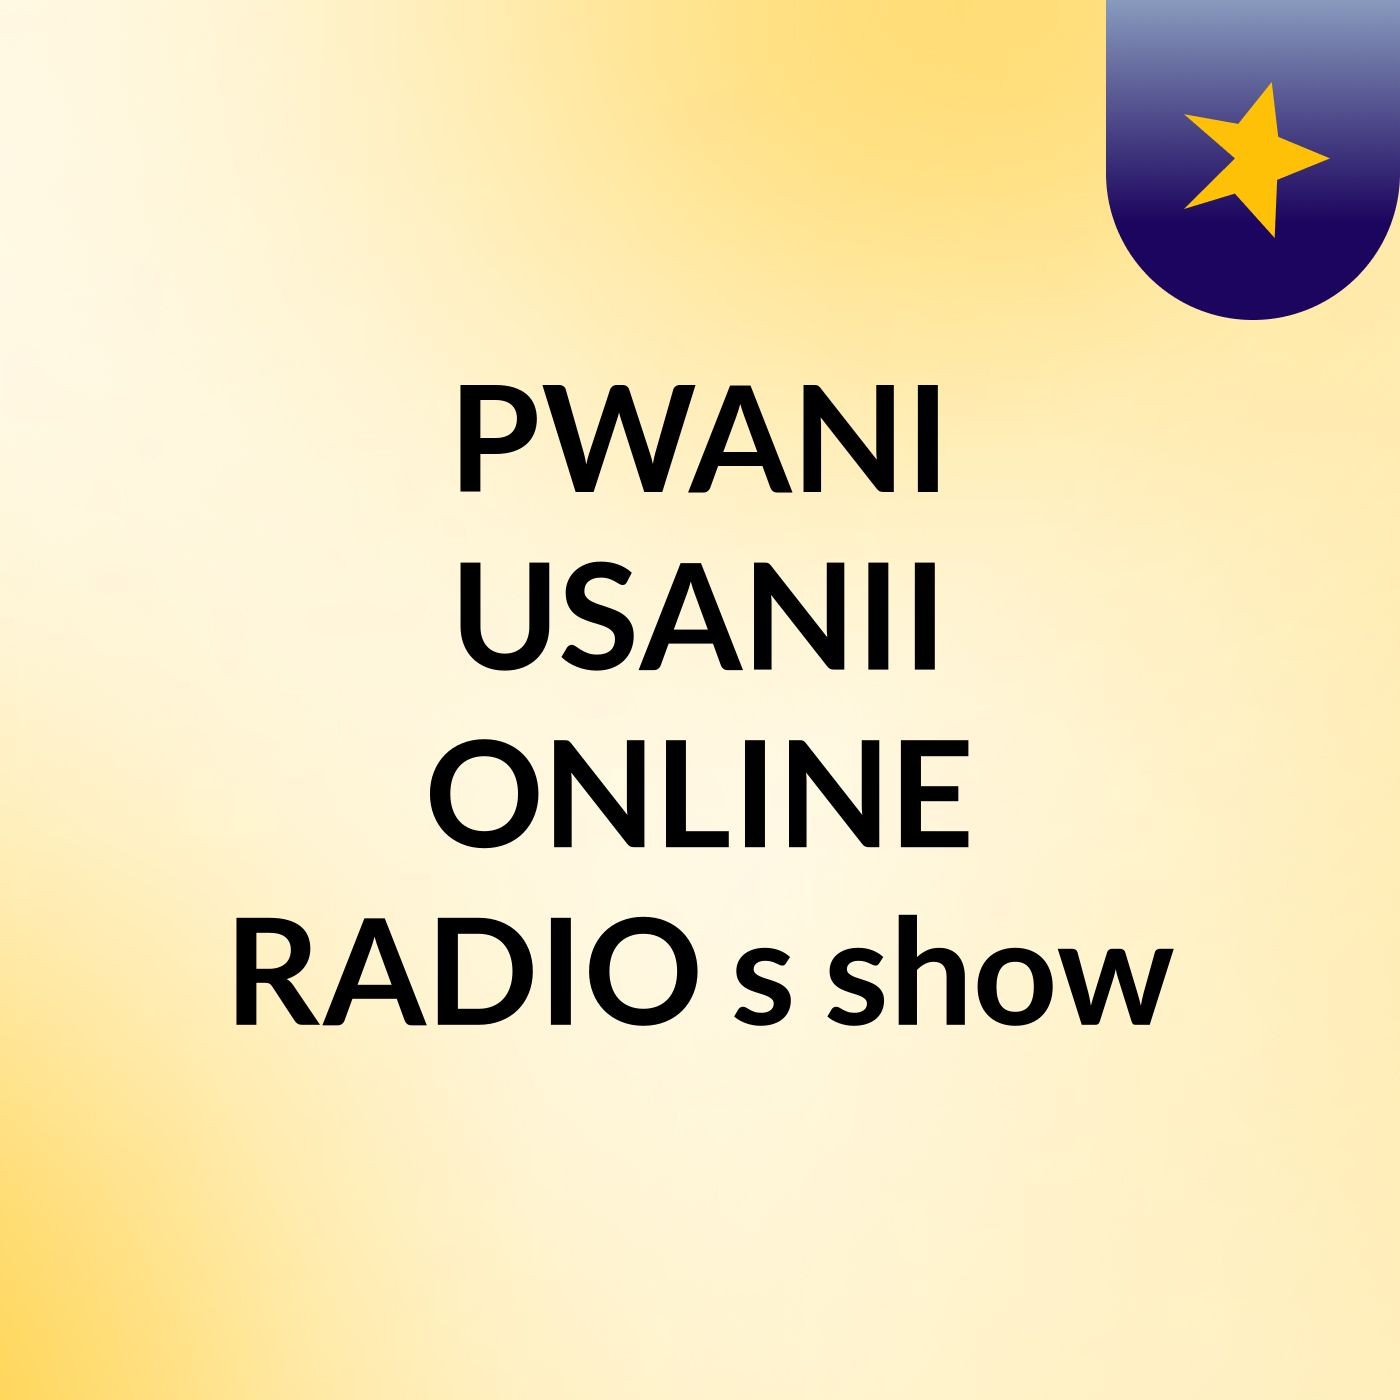 PWANI USANII ONLINE RADIO's show